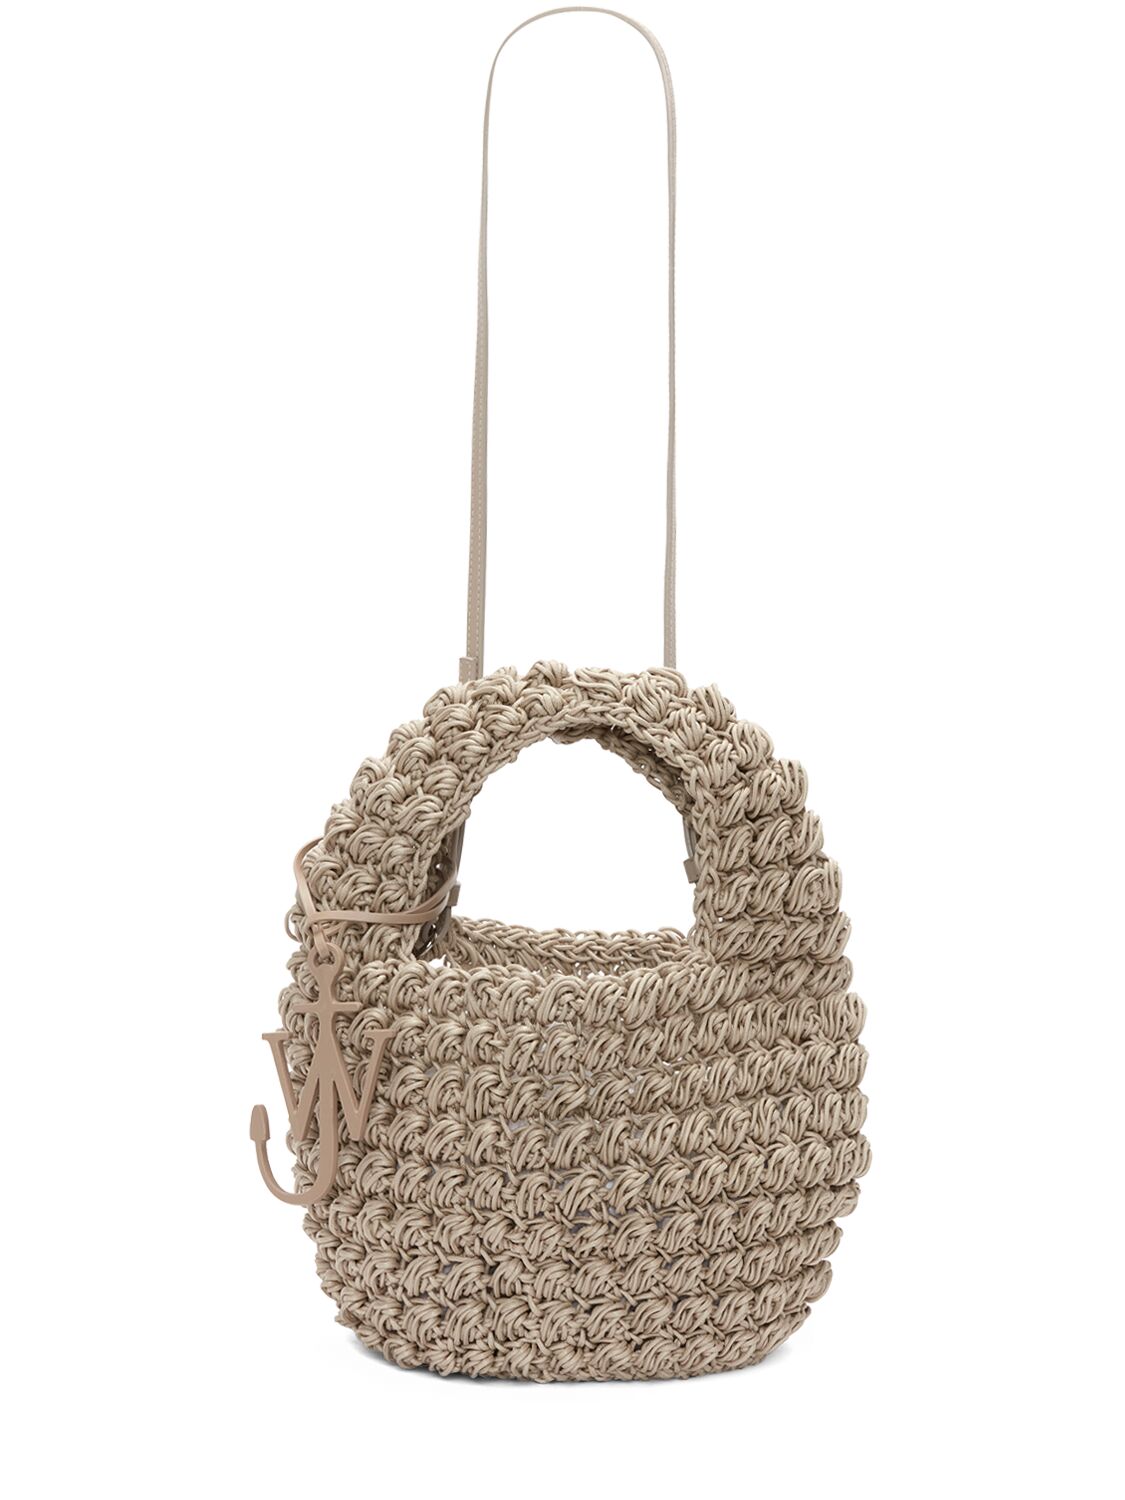 Image of Popcorn Crochet Basket Bag